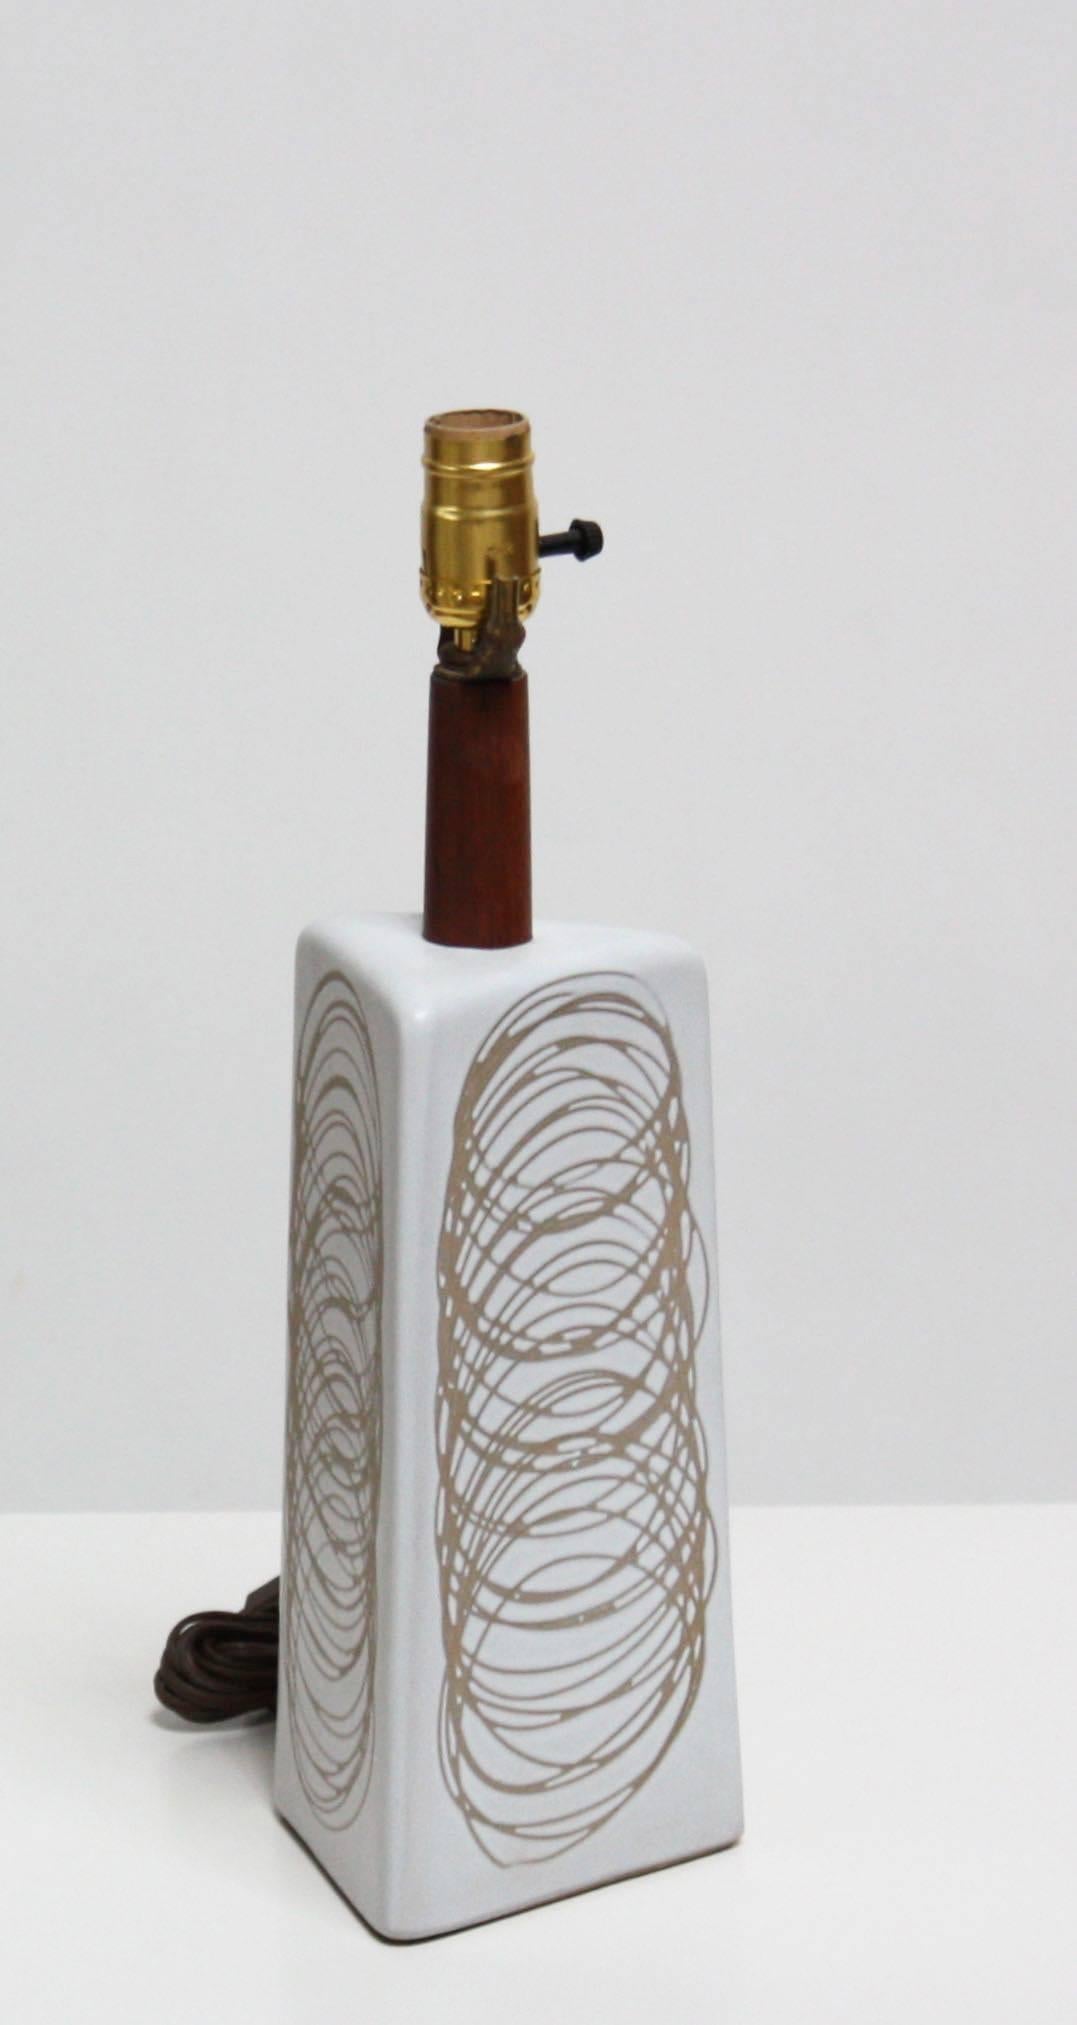 Diese einzigartige Lampe von Jane und Gordon Martz für Marshall Studios hat einen hellgrauen, dreieckigen Sockel mit einem kreisförmigen Sgraffito-Muster in Hellbraun auf allen drei Oberflächen.
 